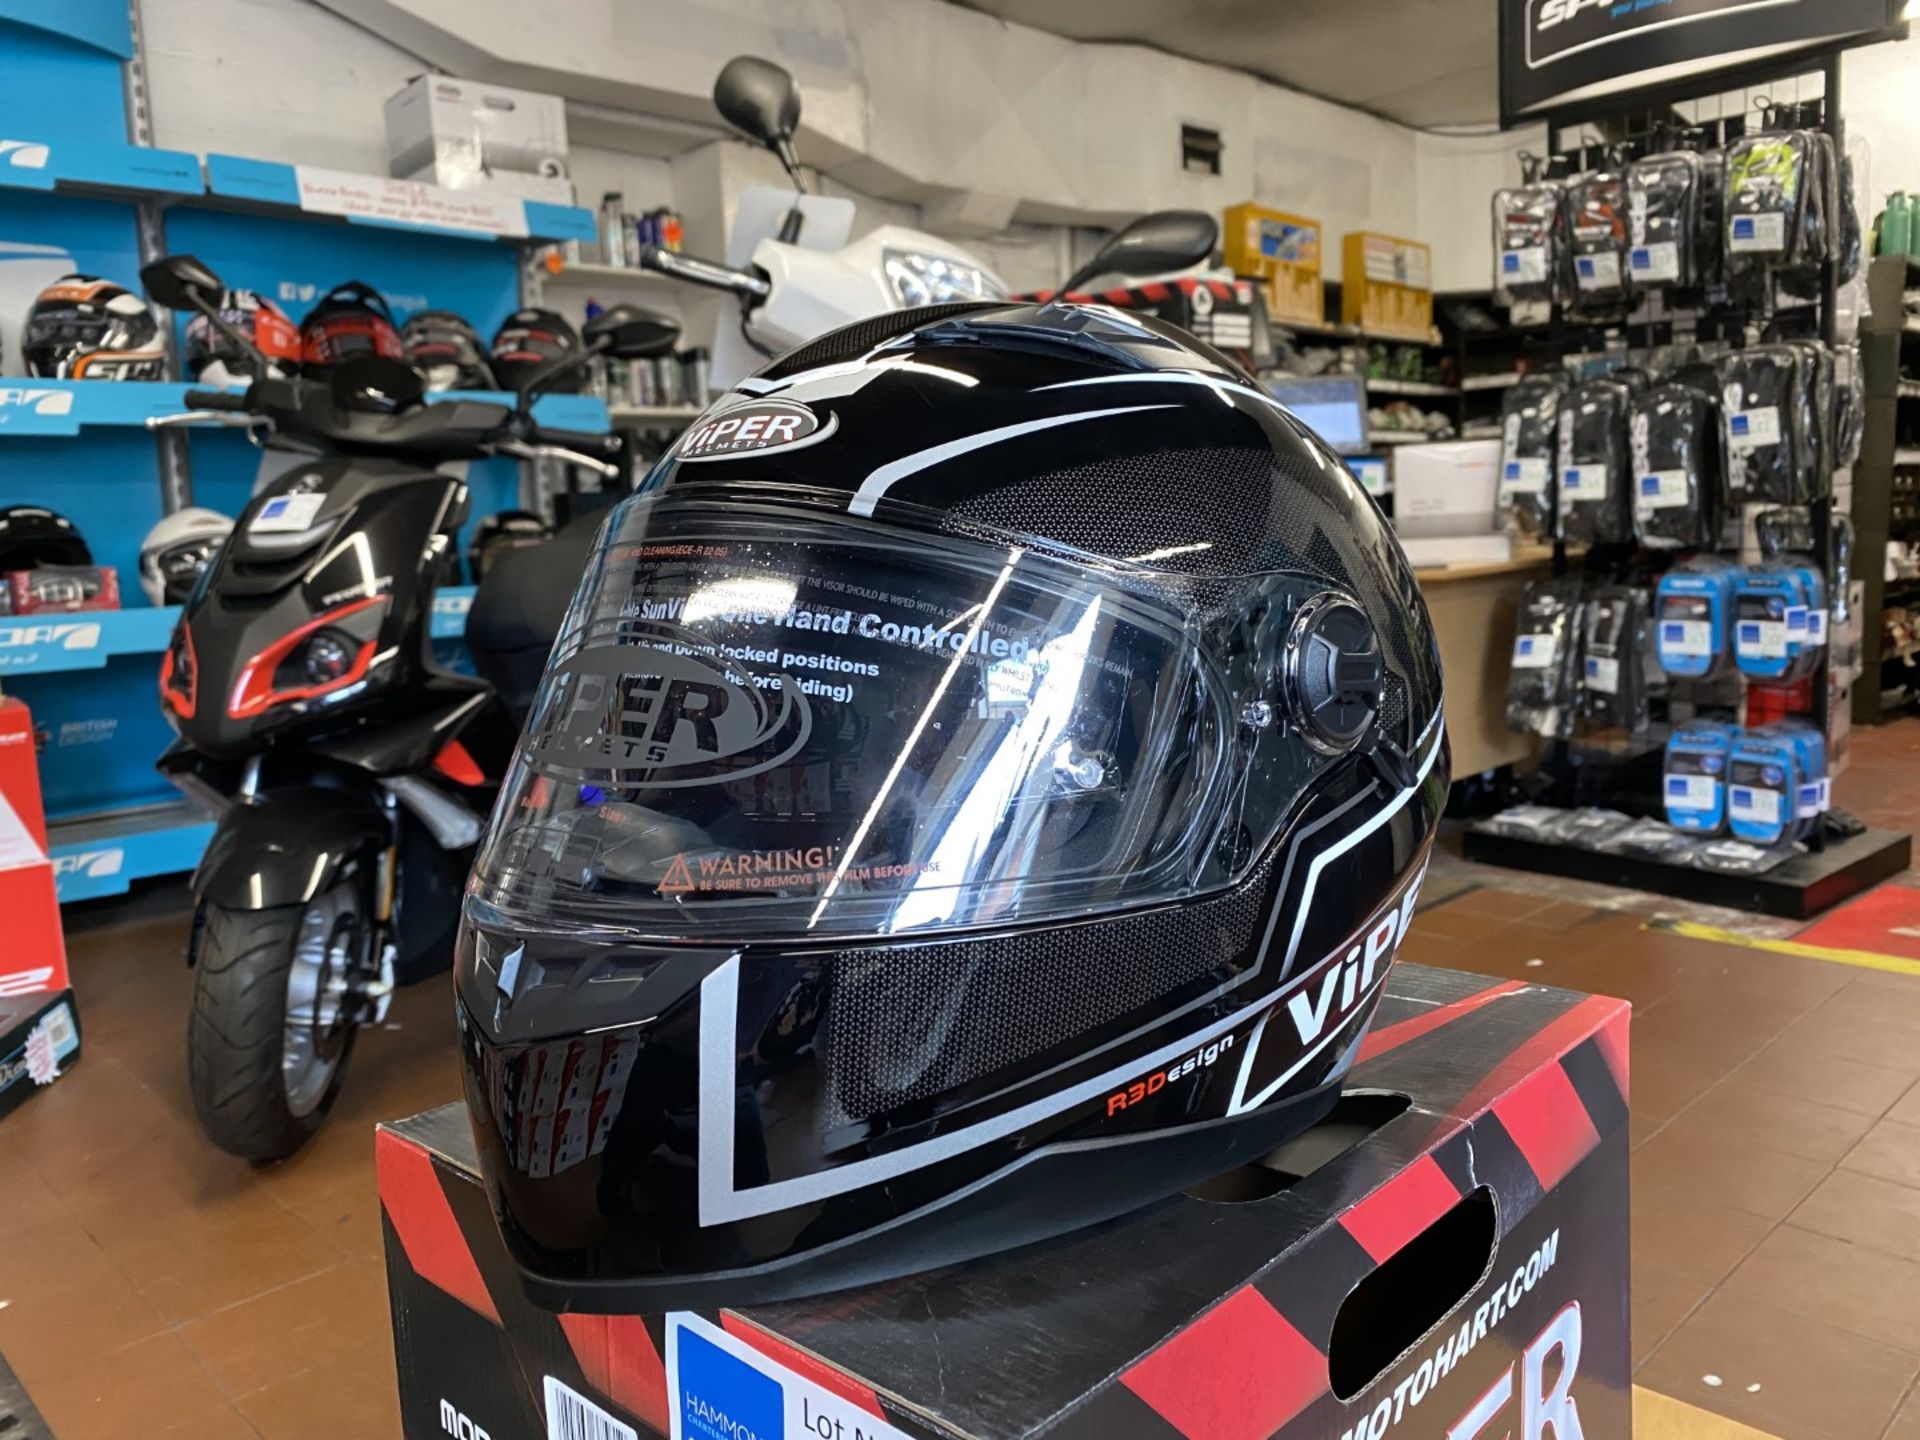 Viper RSV77 Black X-Large - Viper Helmets - Motorcycle / Motorbike Helmet - RRP £69.99 - Image 2 of 5